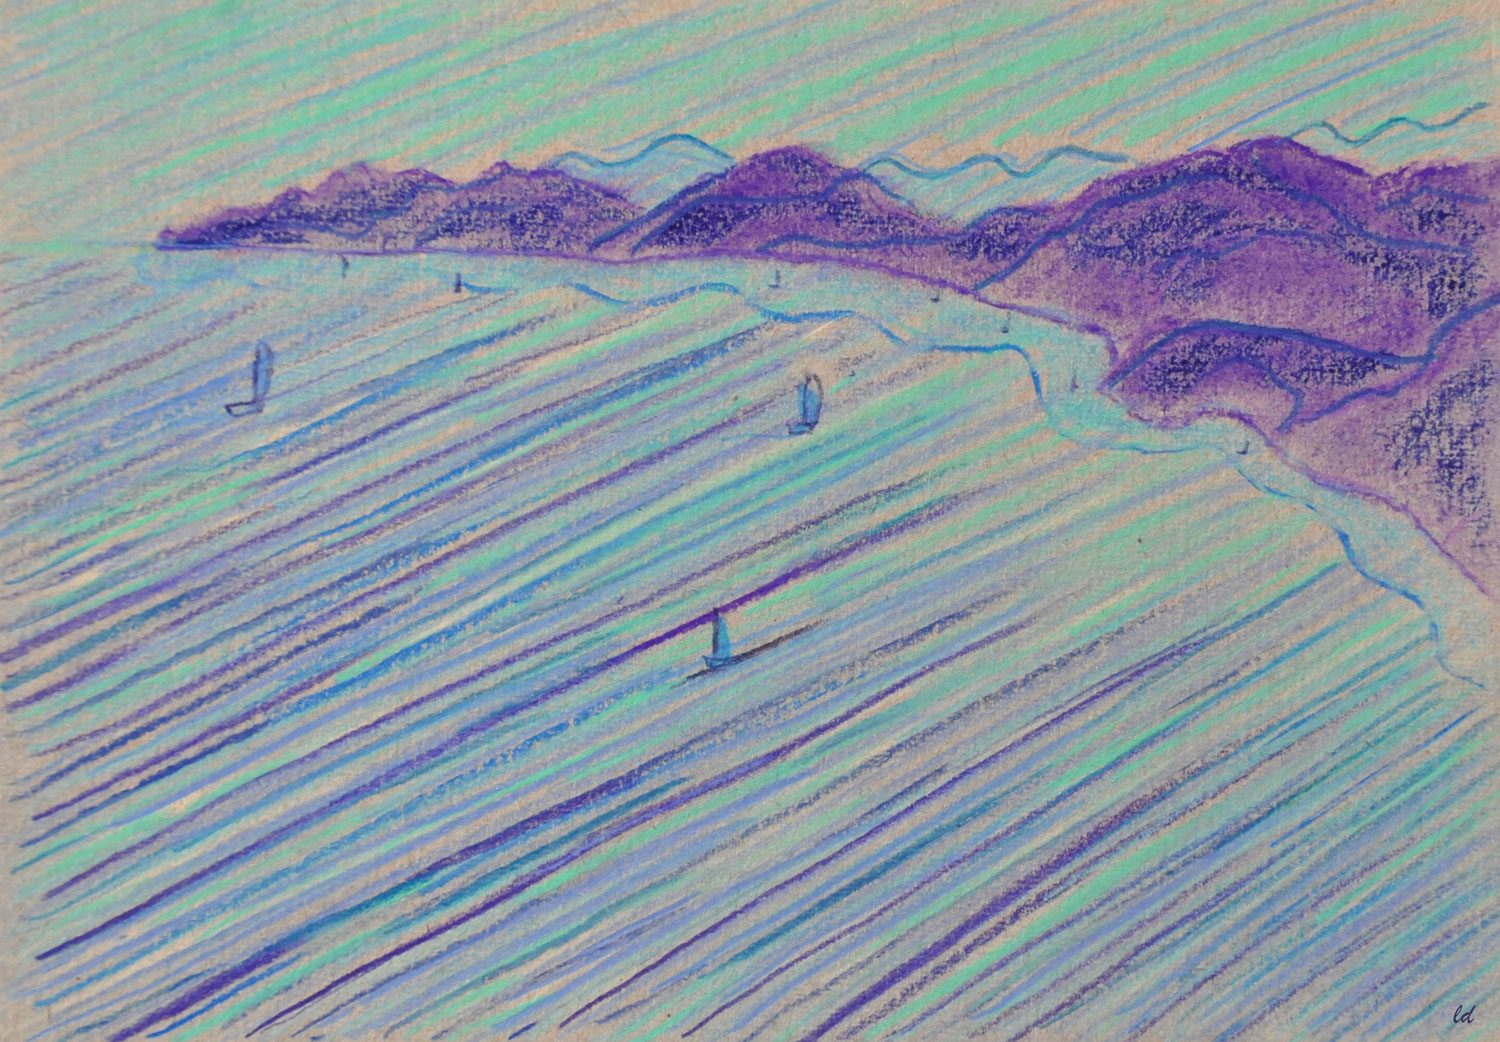 Cala Gonone, 1, Vista dal balcone. Crayon de couleur sur carton, 15x21, 2021